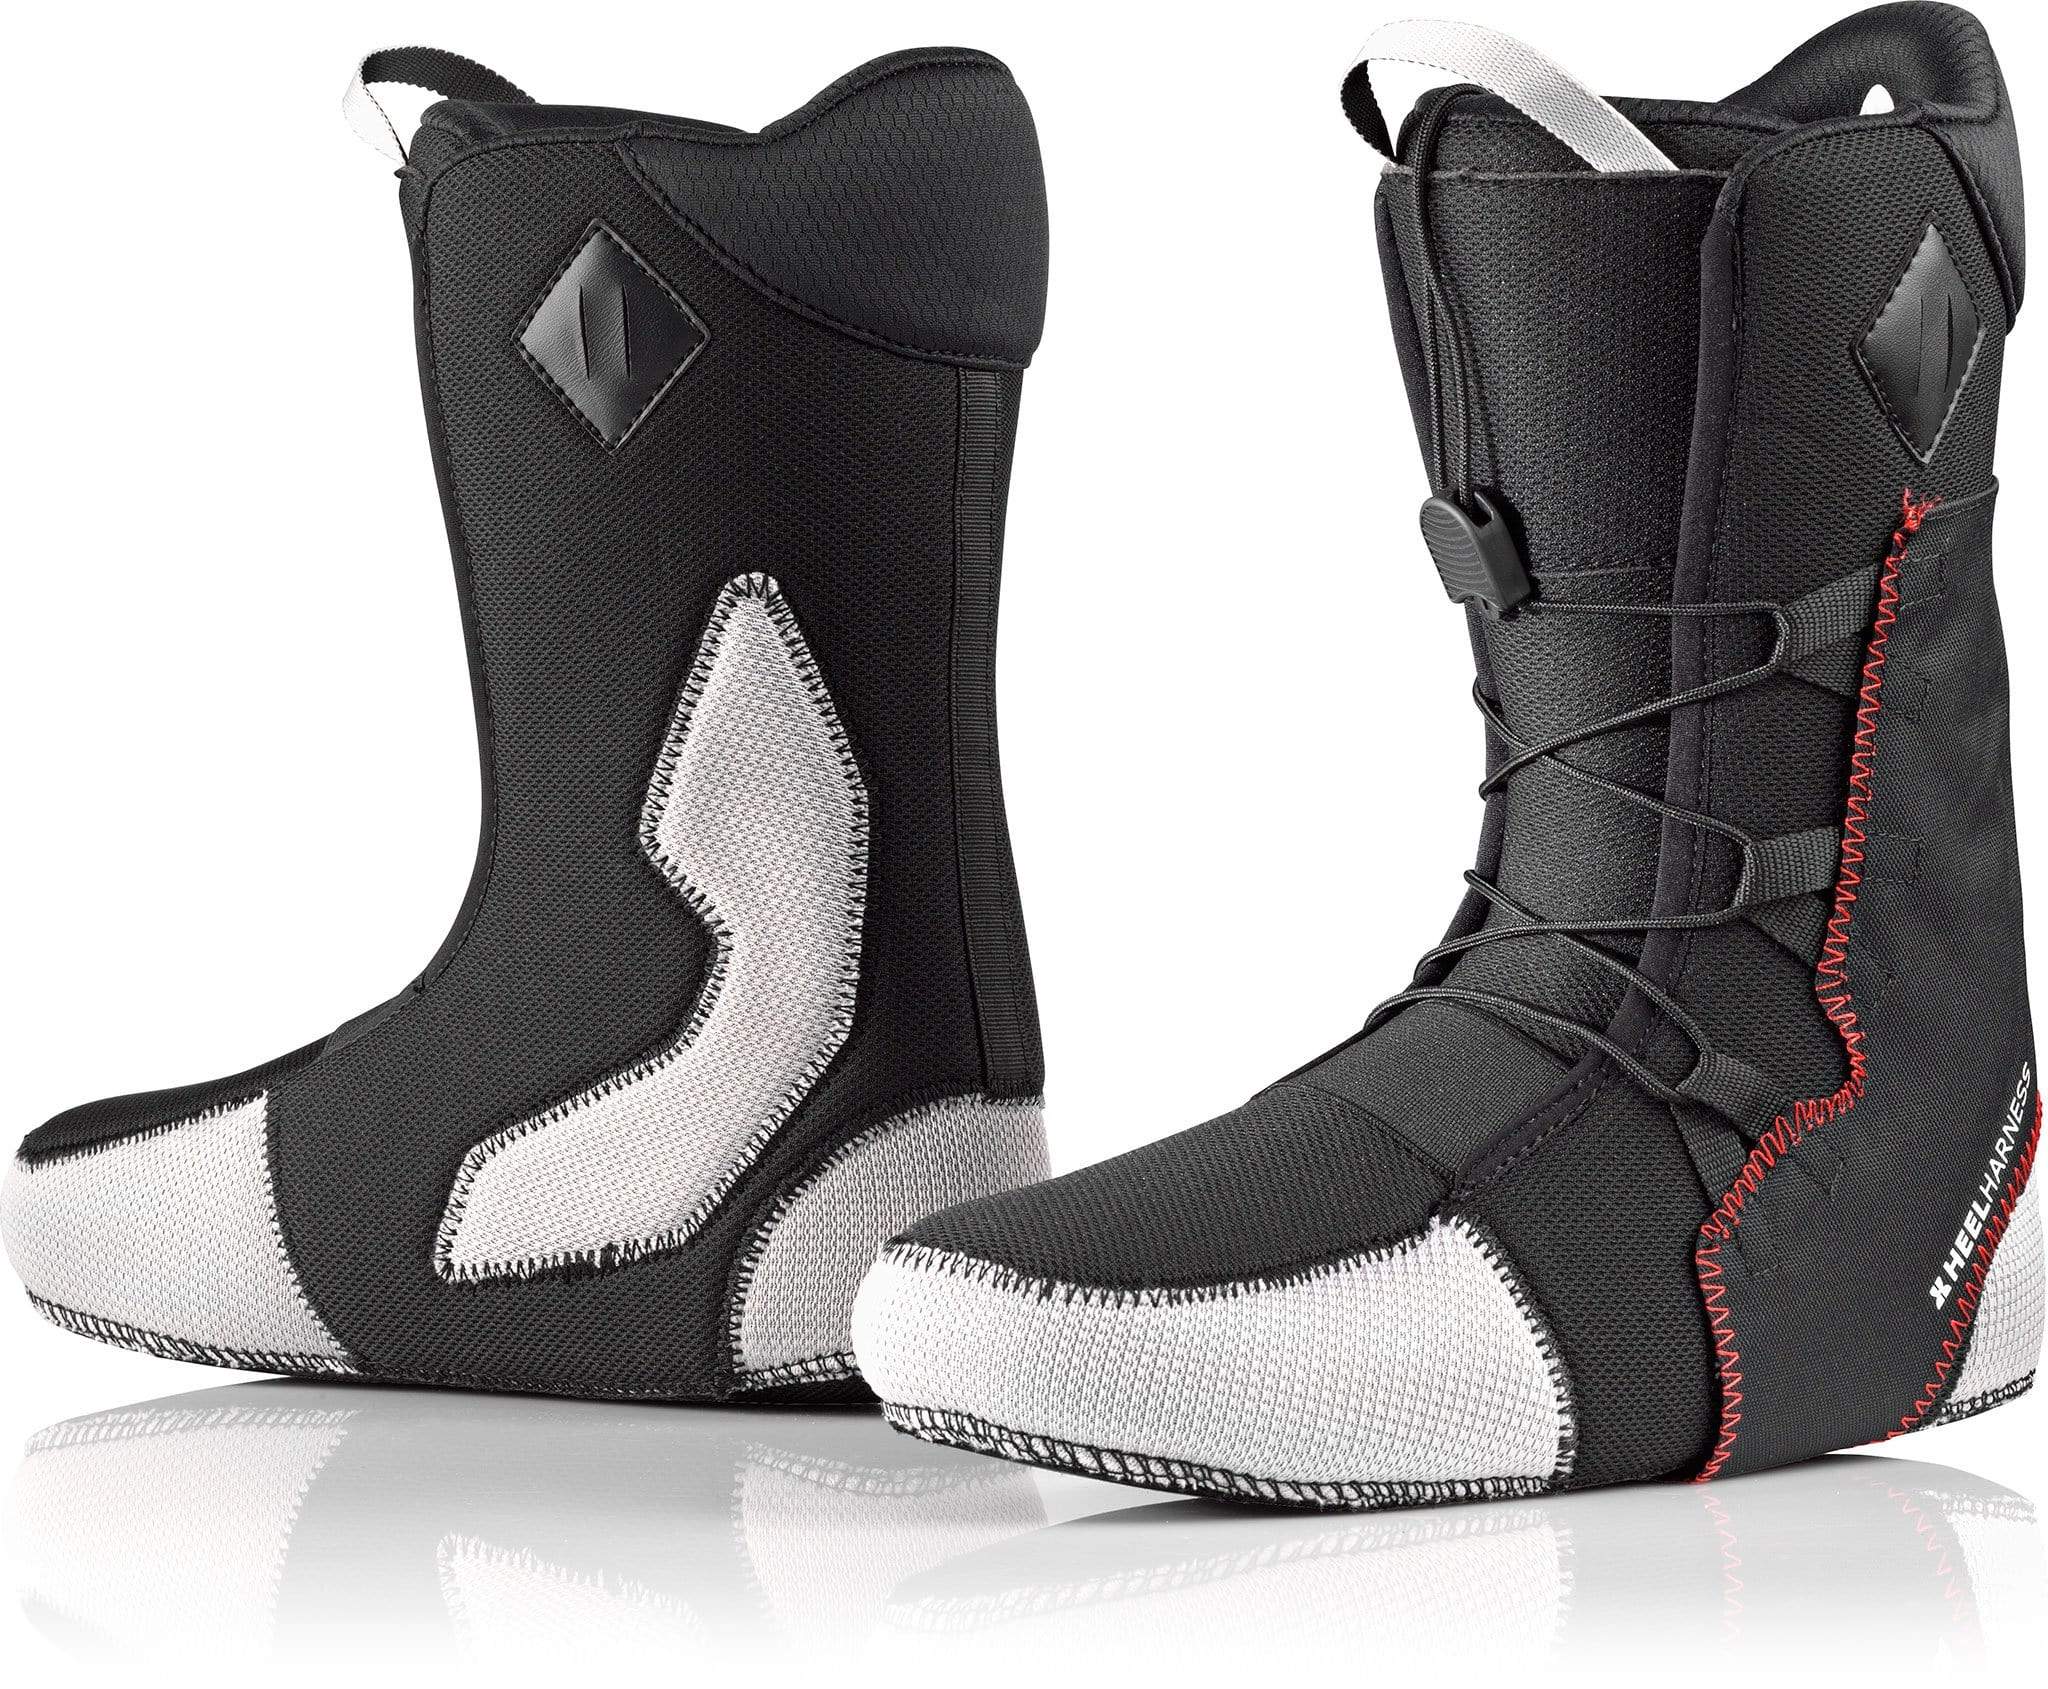 Deeluxe Deemon Snowboard Boots 2022